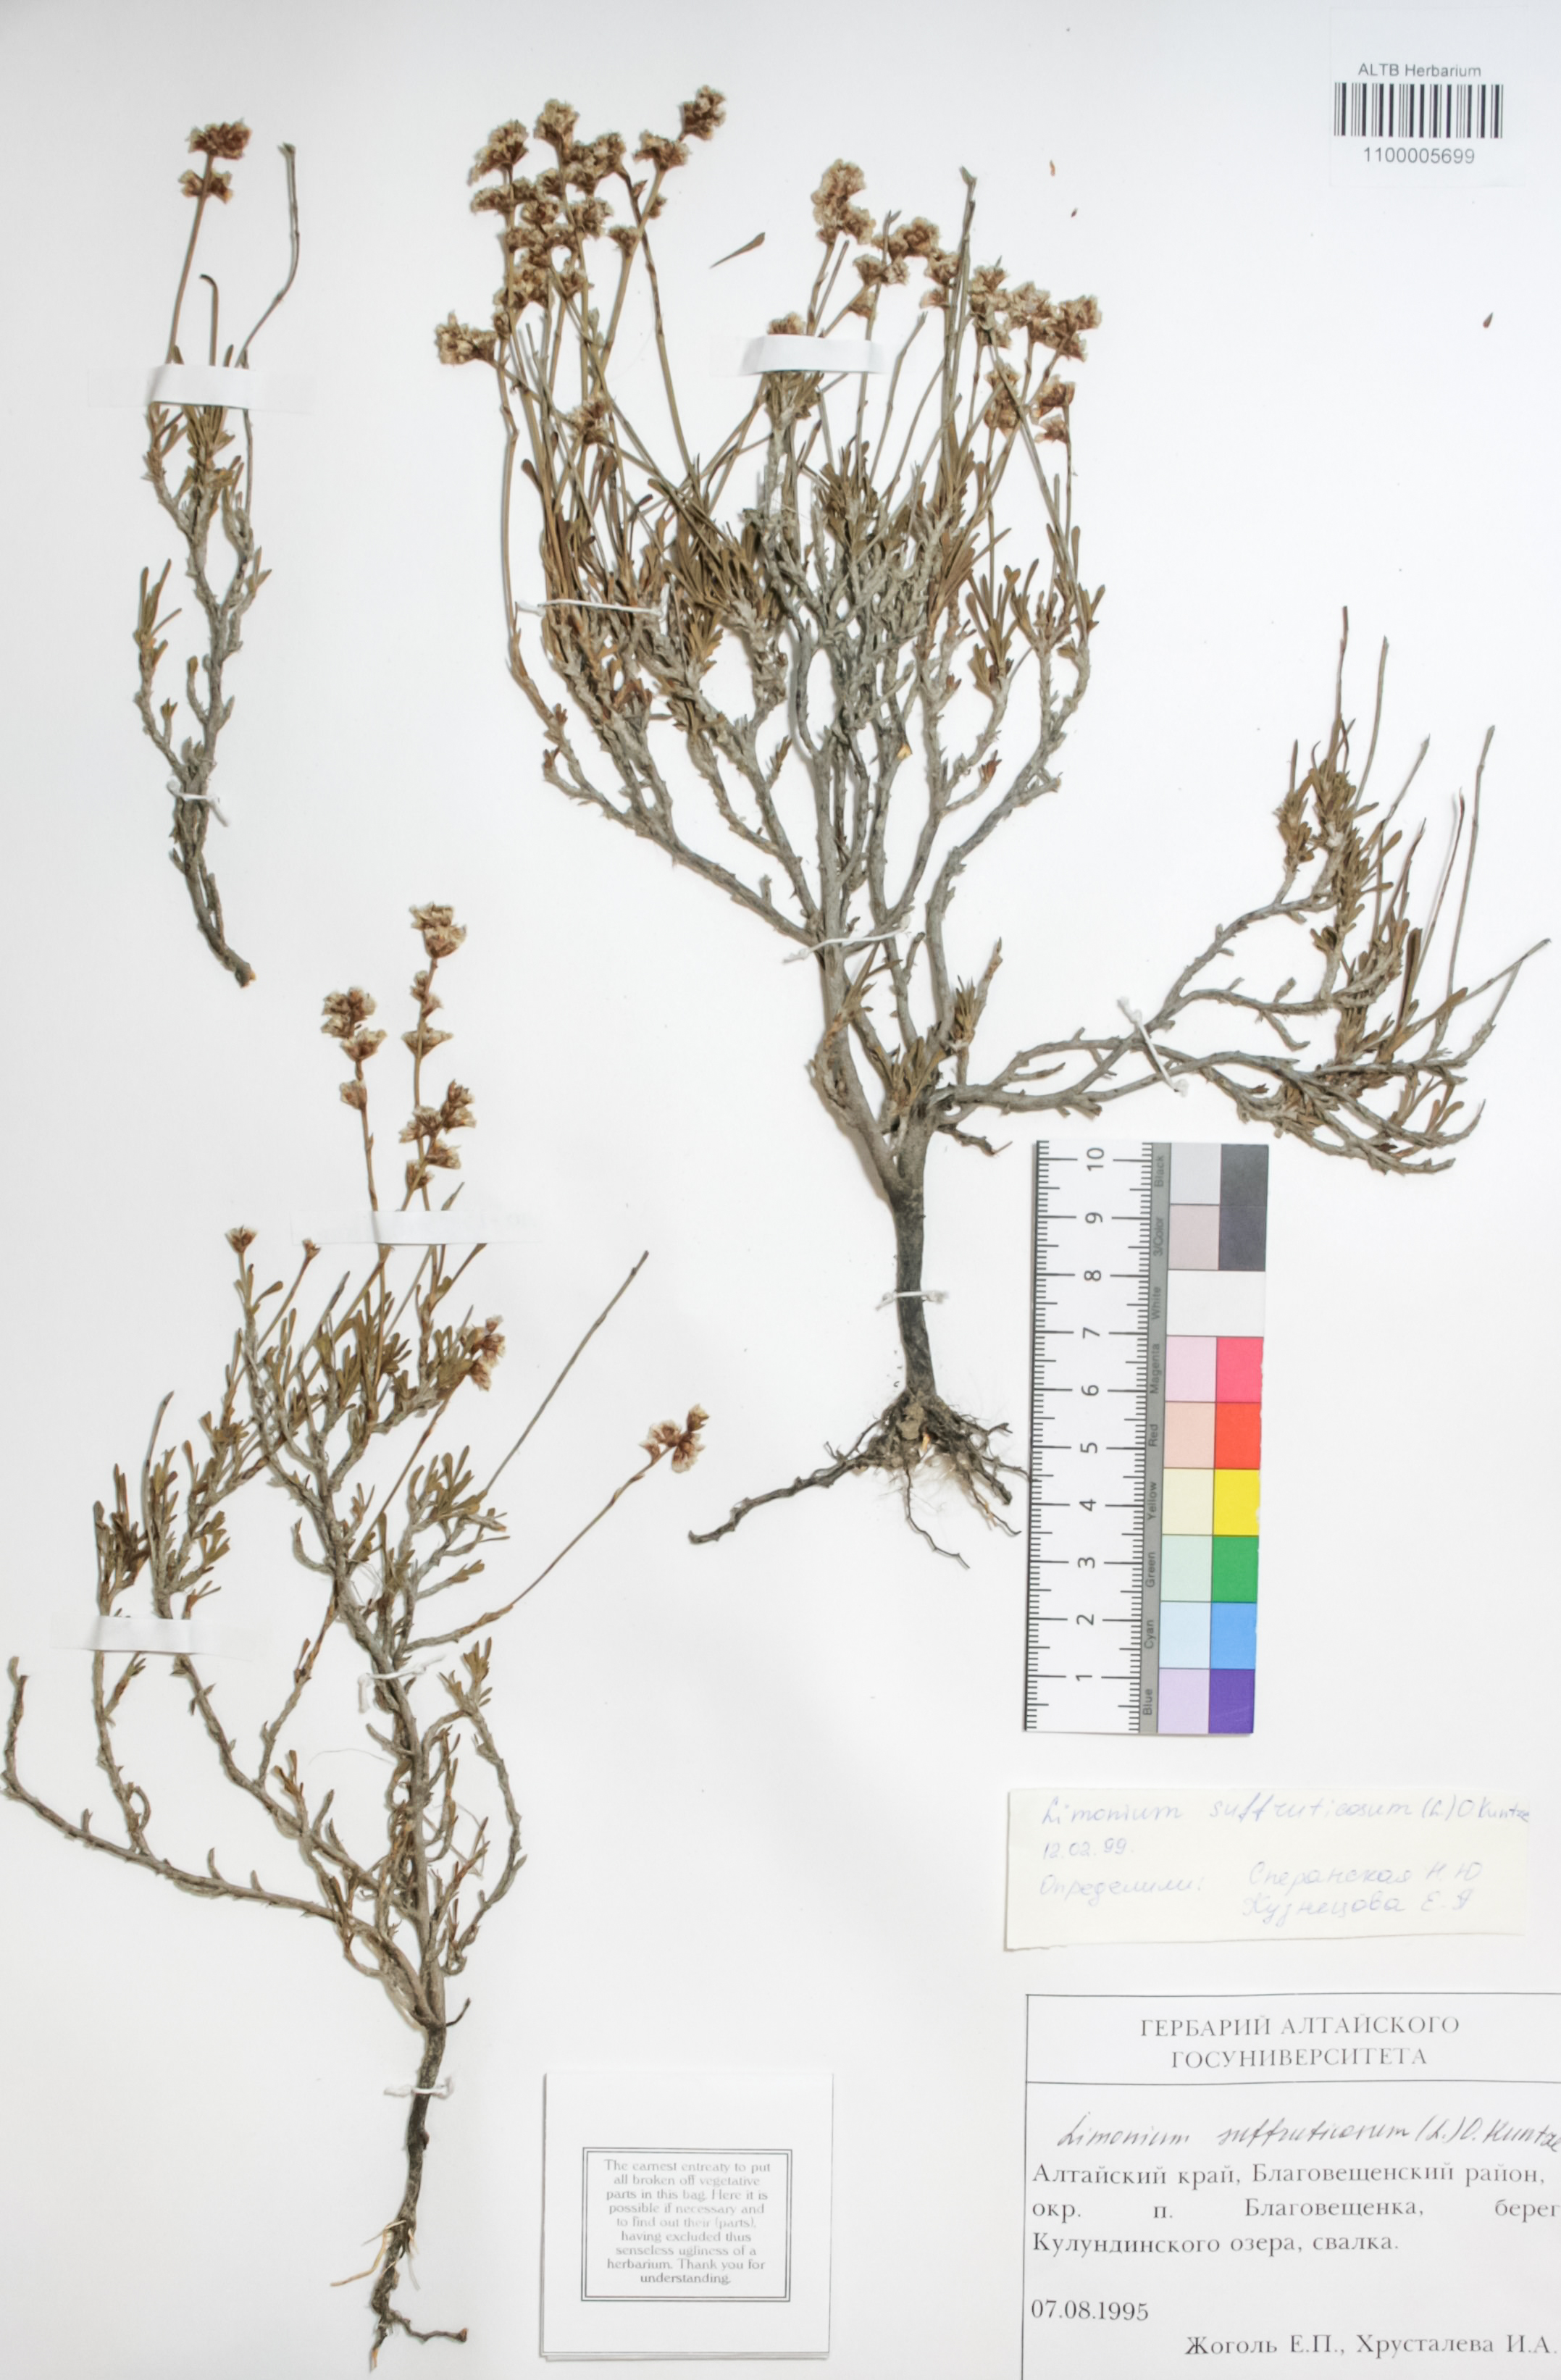 Plumbaginaceae,Limonium suffruticosum O. Kuntze